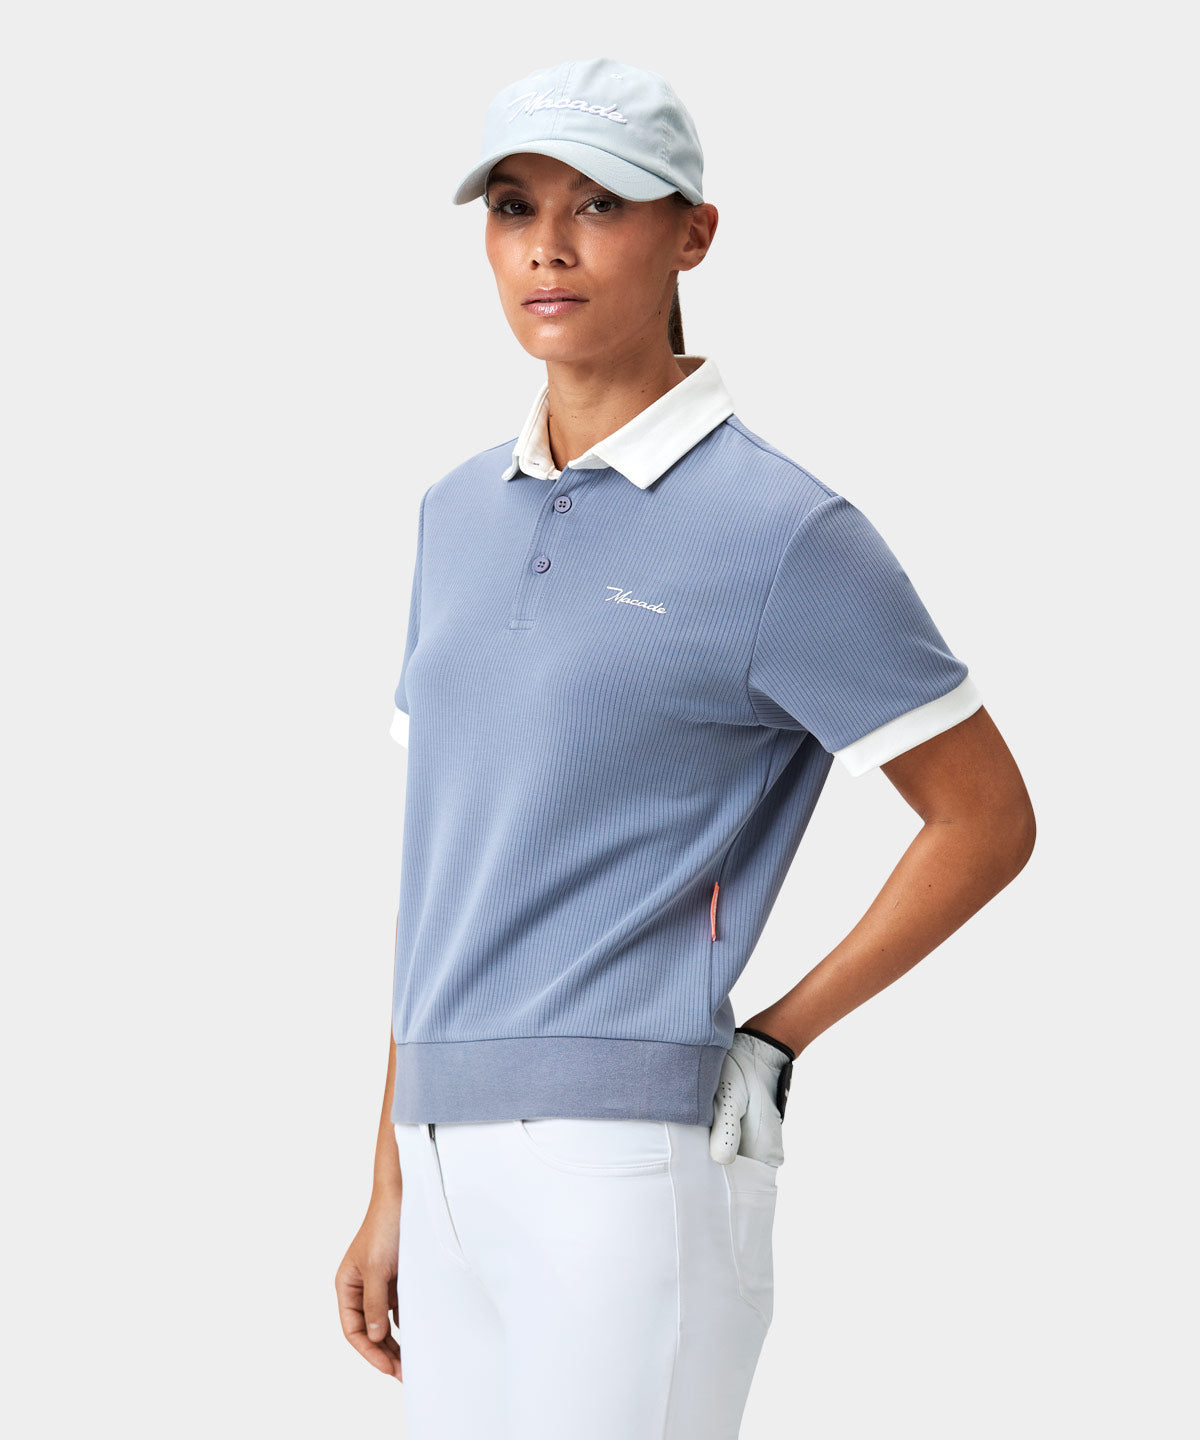 Gray Tech Range Polo Shirt